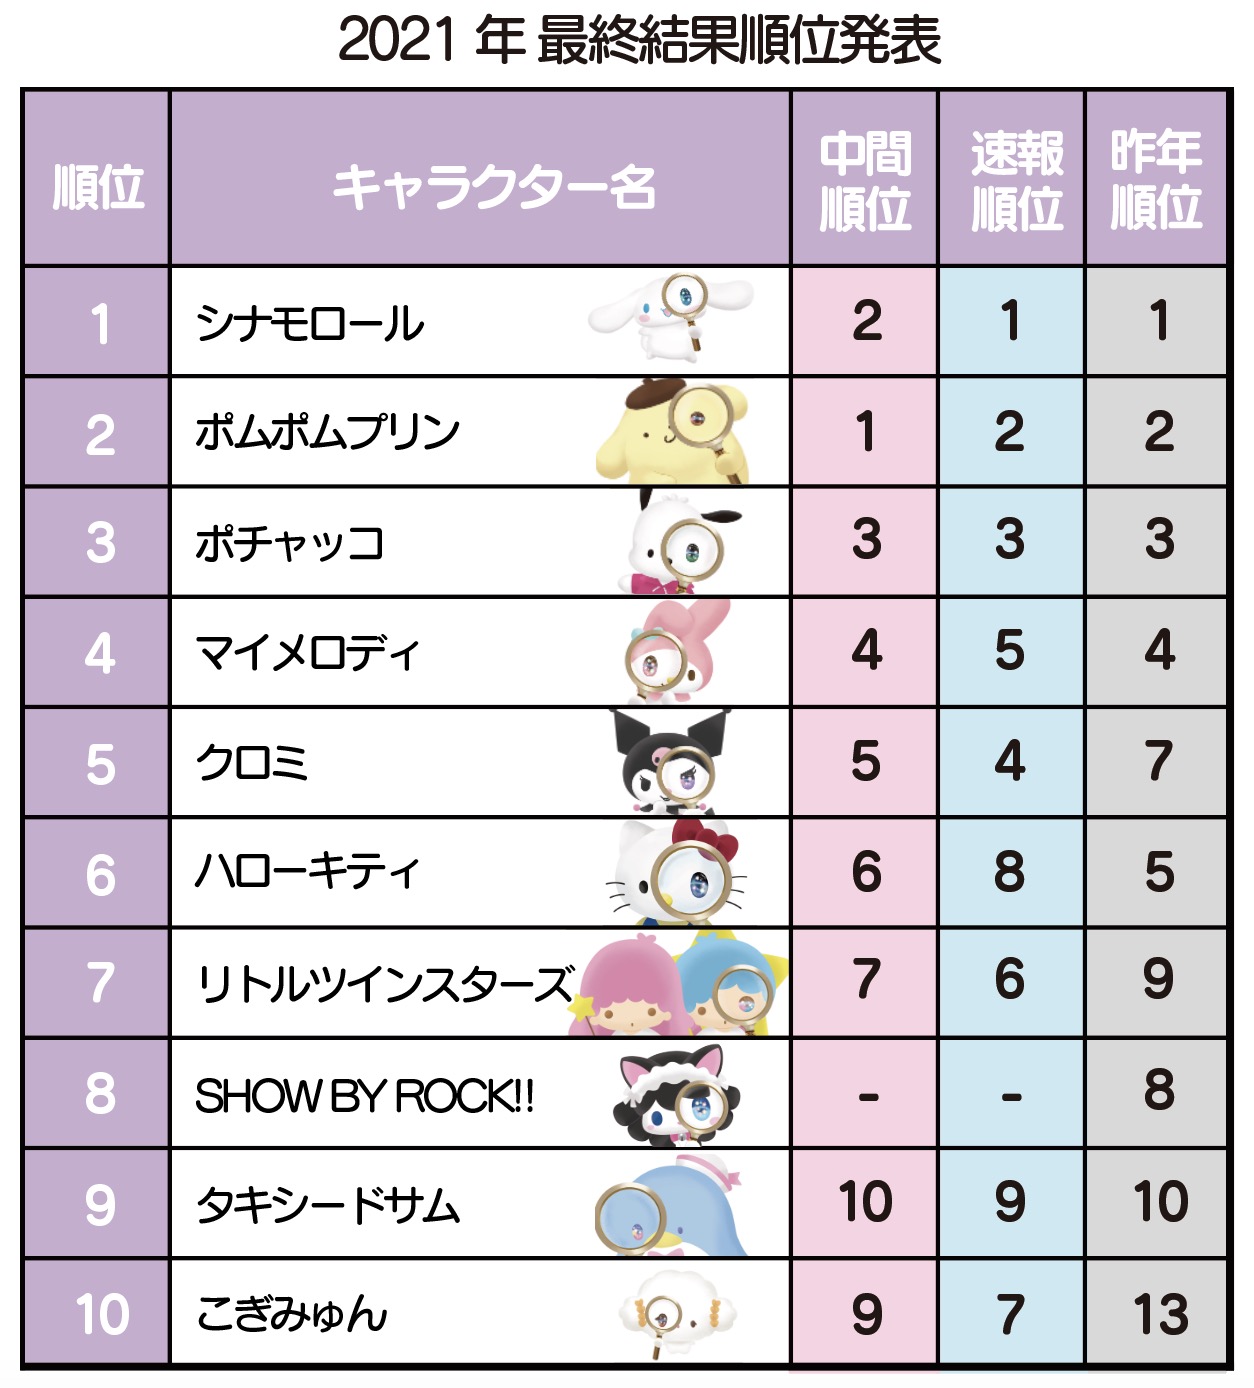 Ranking! Resultado da 34ª enquete anual de melhores personagens da Sanrio é  divulgado - Crunchyroll Notícias